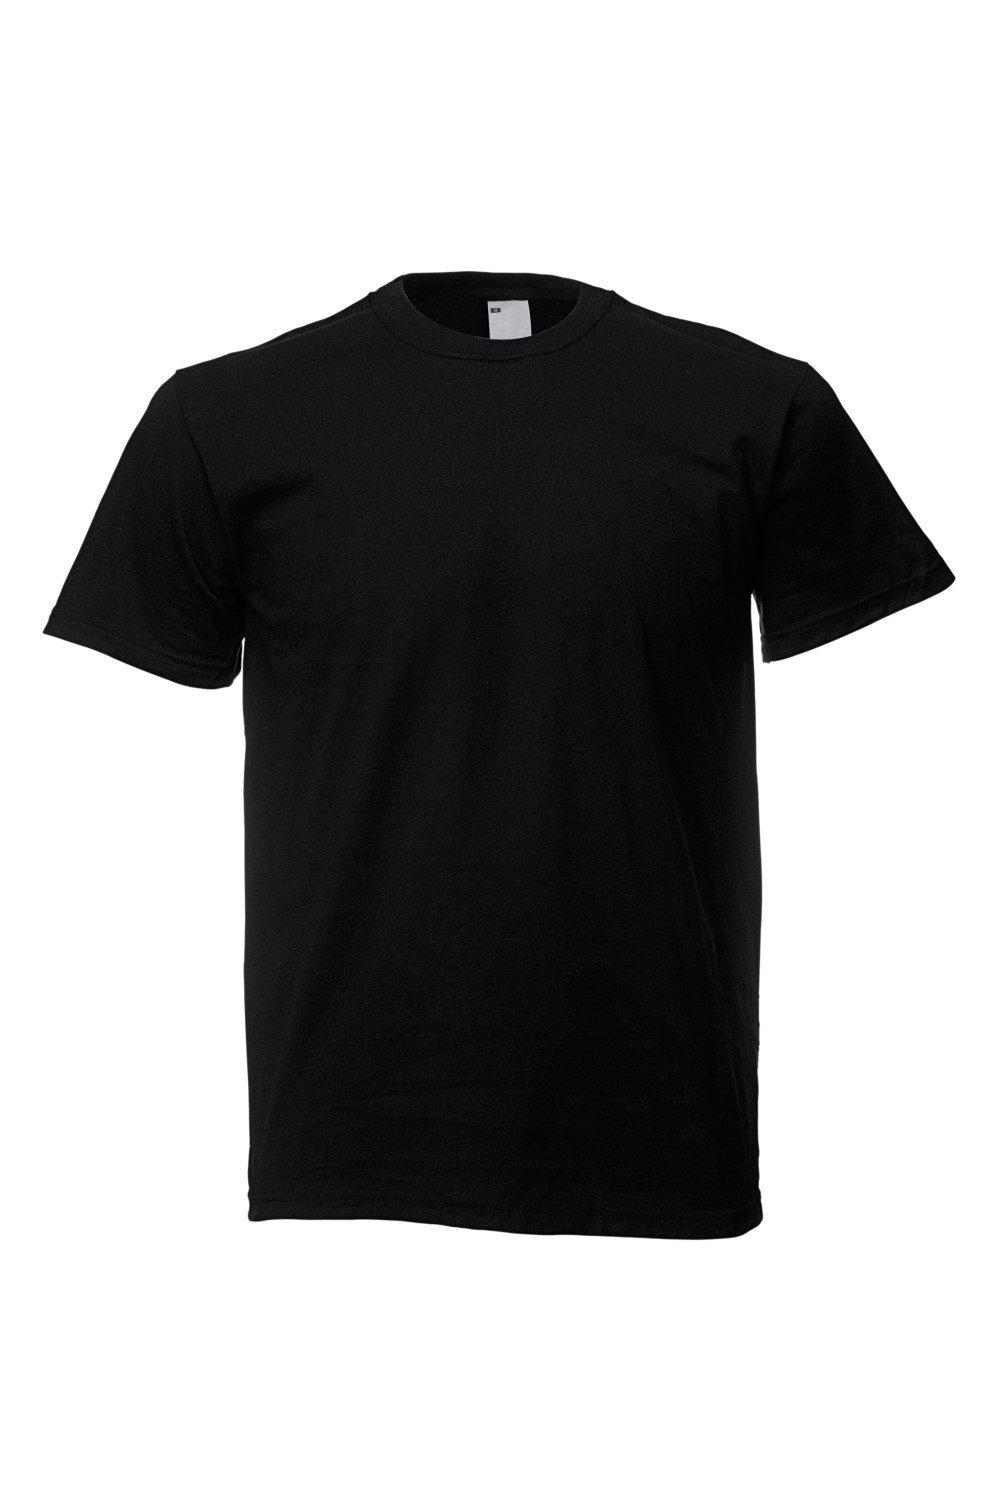 Повседневная футболка с коротким рукавом Universal Textiles, черный мужская футболка лиса русская краса xl серый меланж